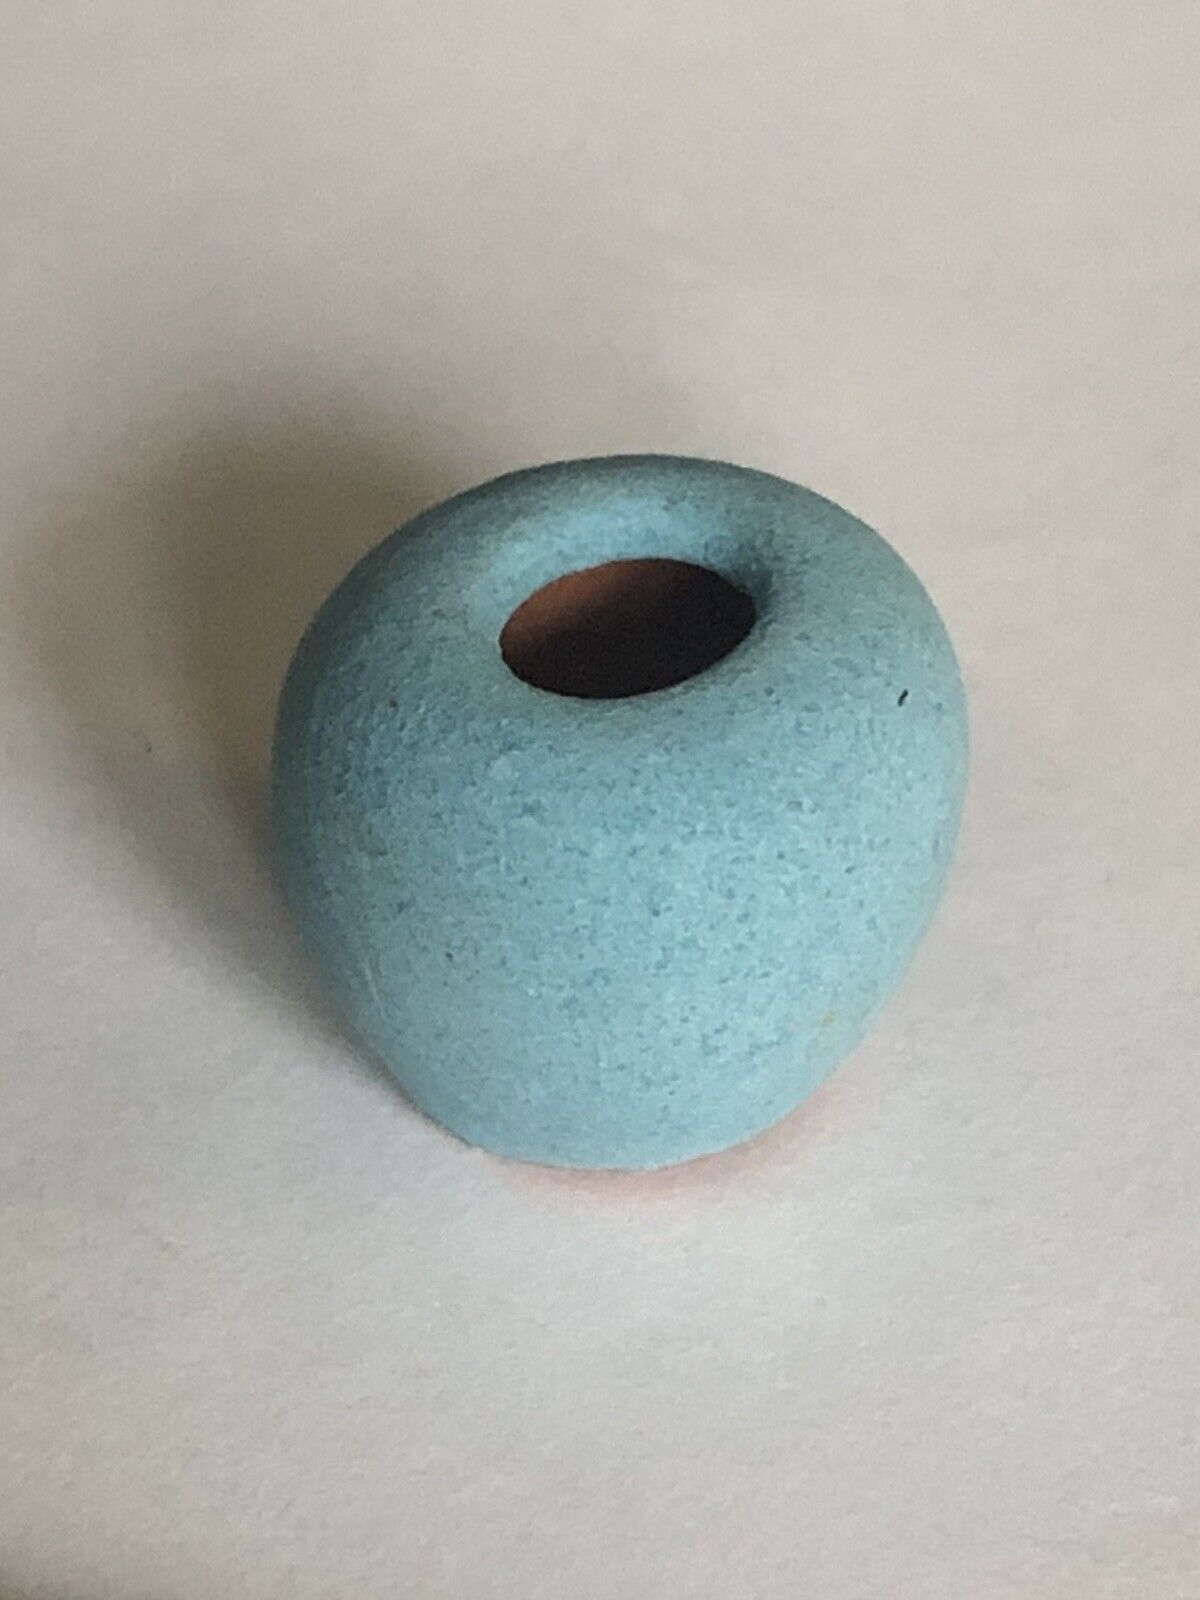 Dollhouse Miniature Artist Alex Meiklejohn Pottery Turquoise Blue Round Vase